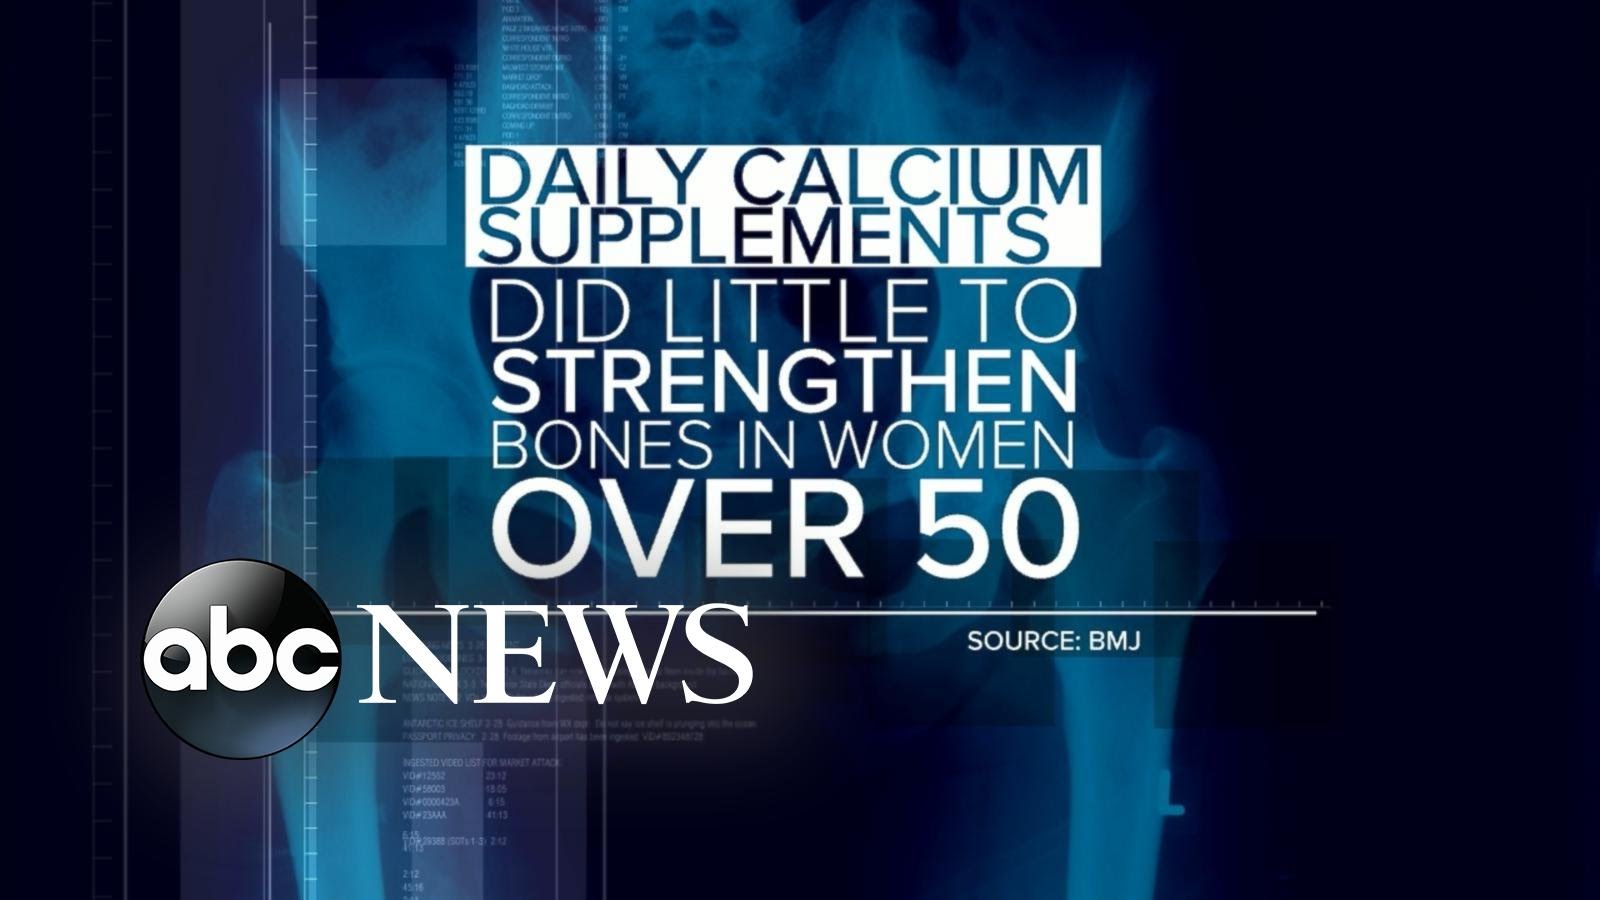 Do Calcium Supplements Actually Strengthen Bones?